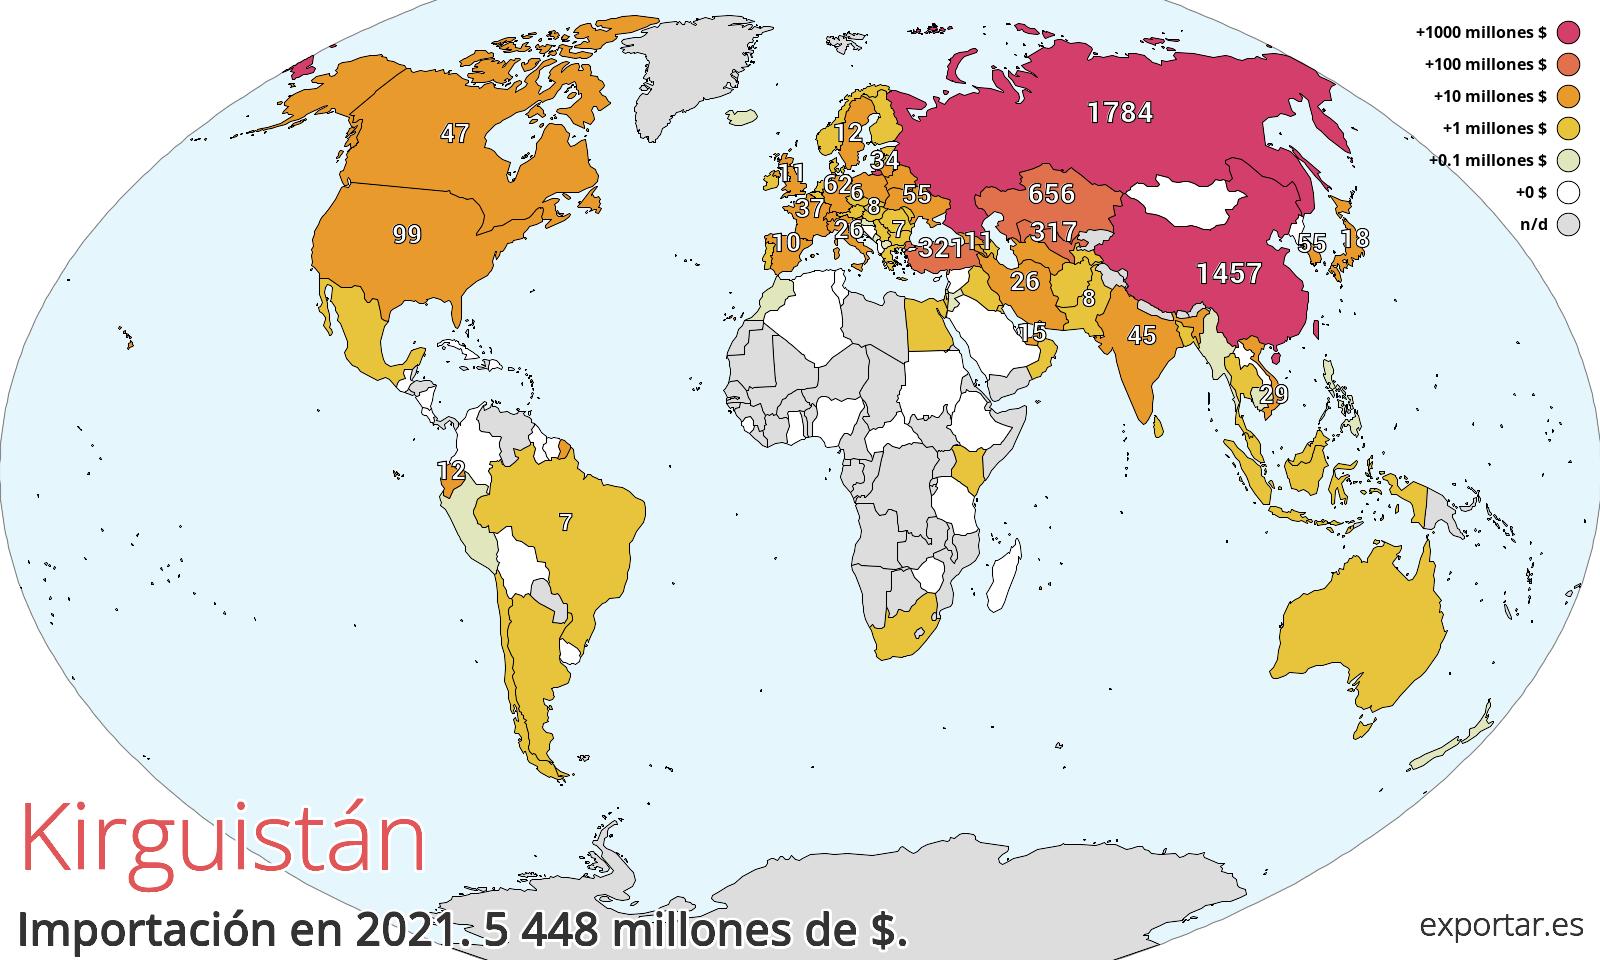 Mapa de importación de Kirguistán en 2021.